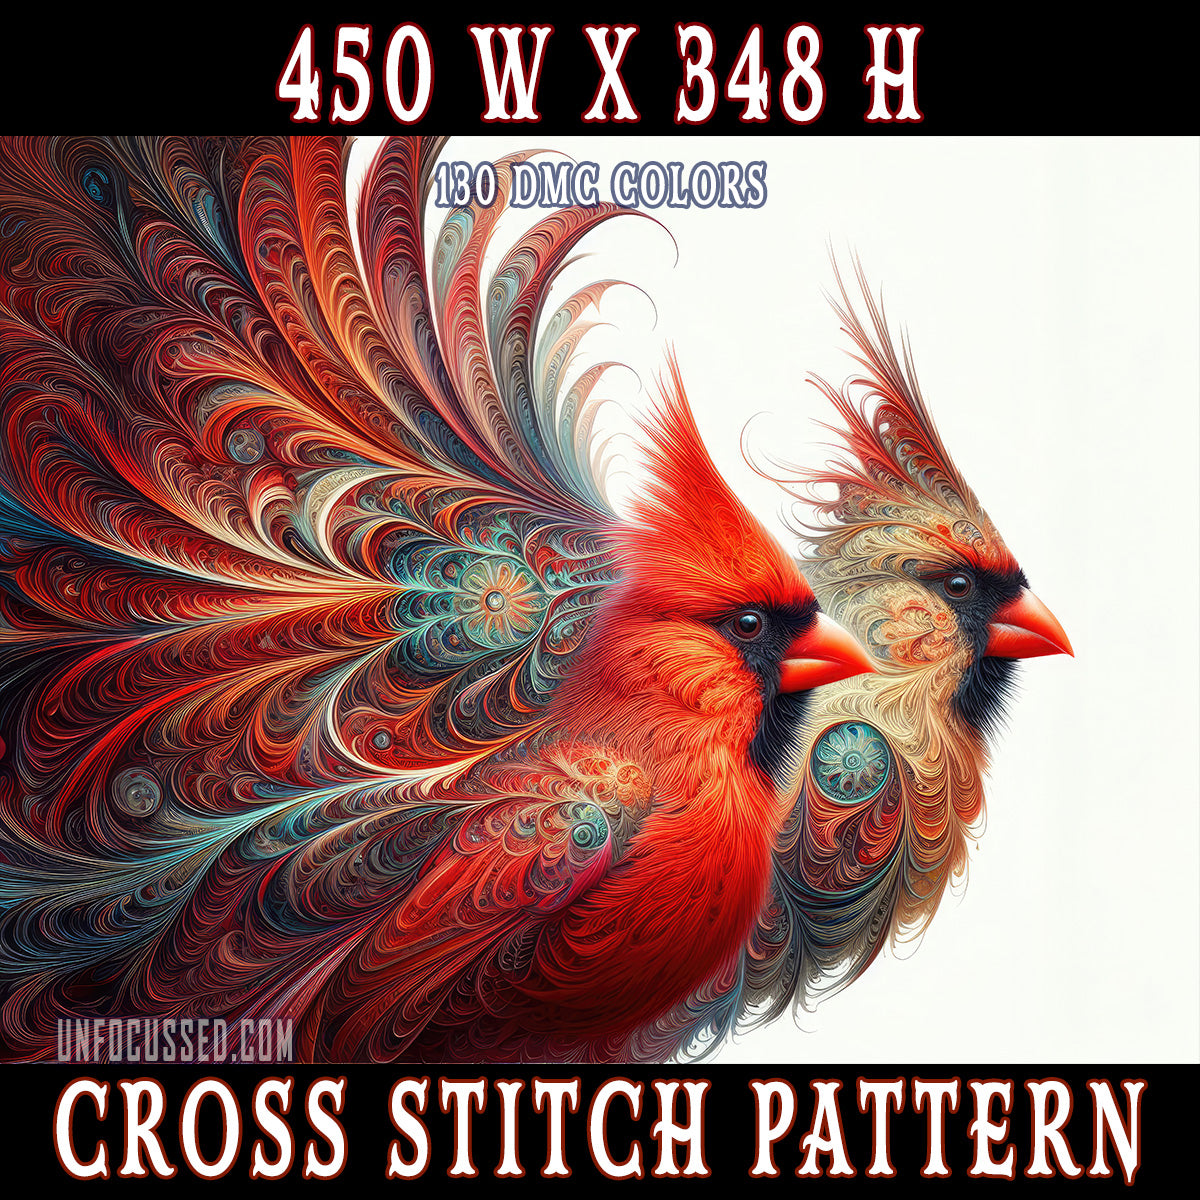 Eternal Love's Wings Cross Stitch Pattern